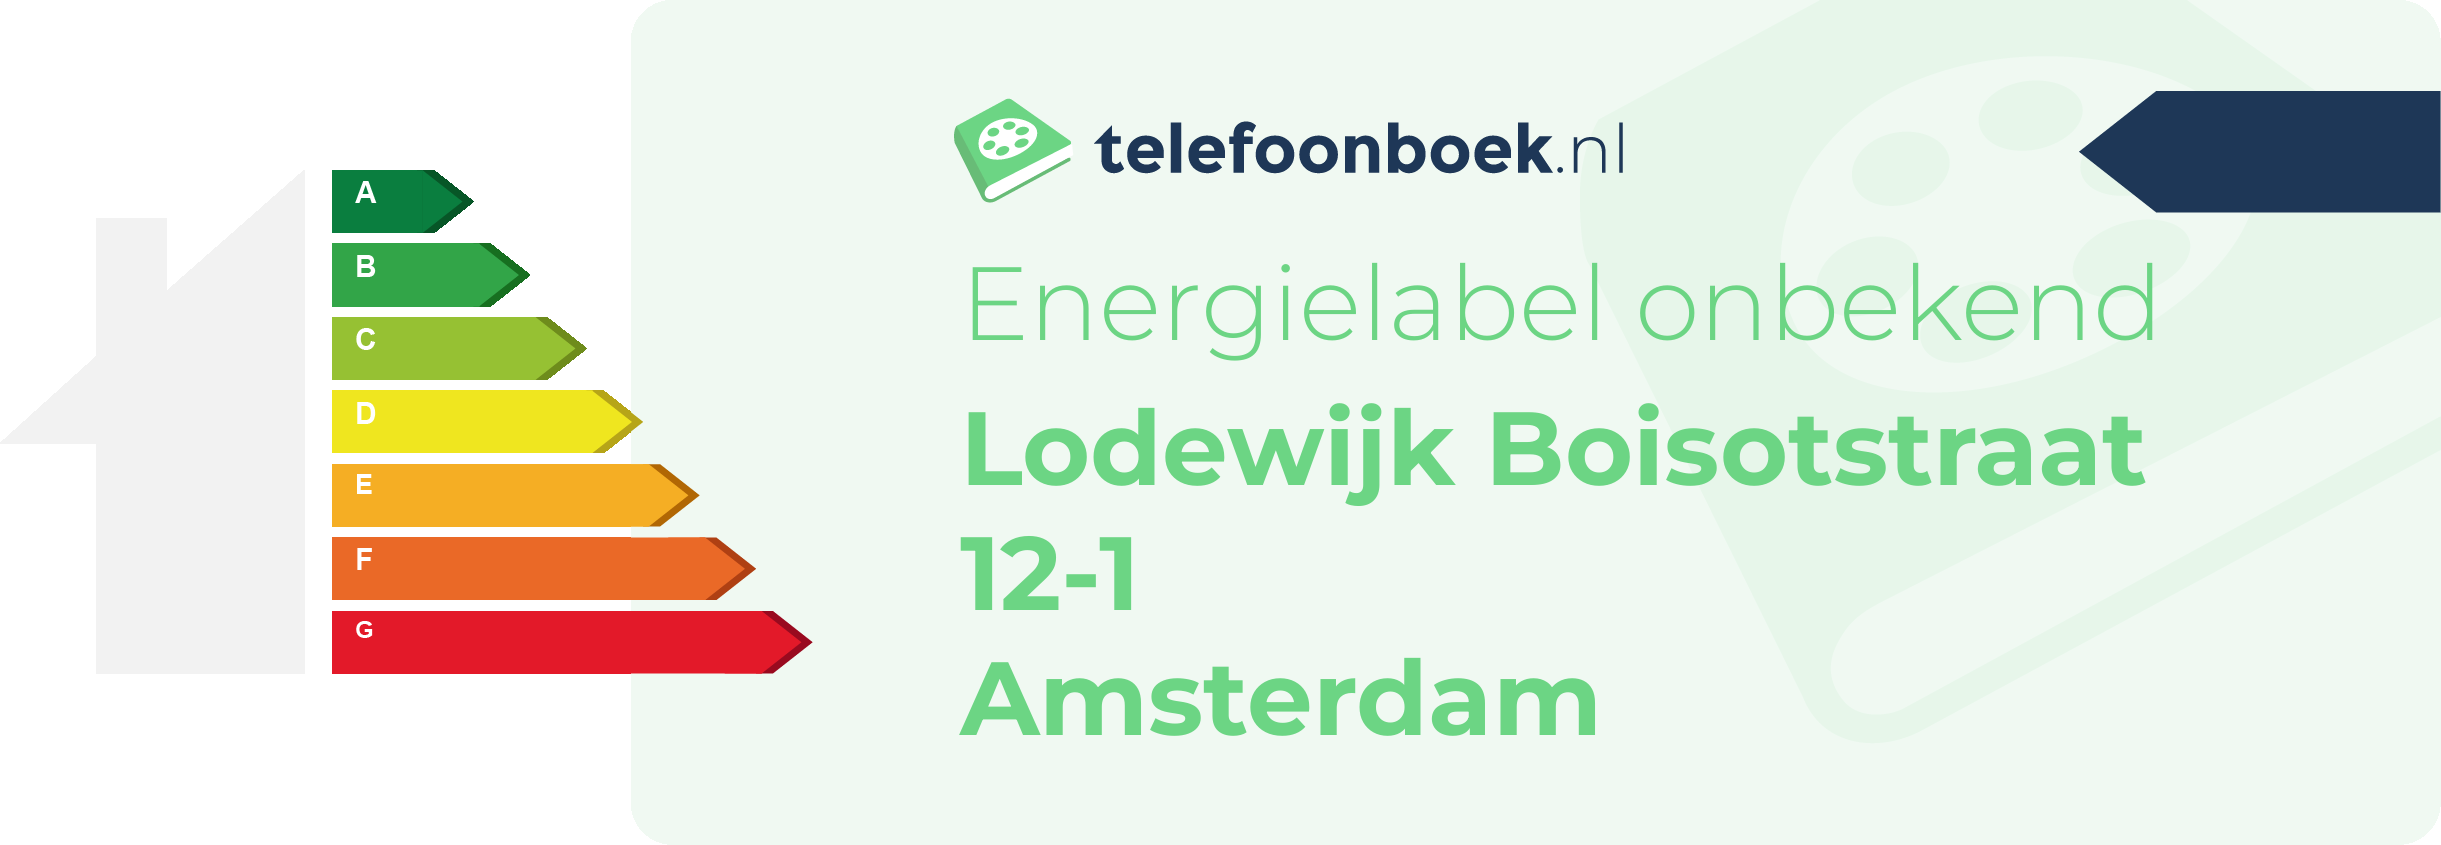 Energielabel Lodewijk Boisotstraat 12-1 Amsterdam